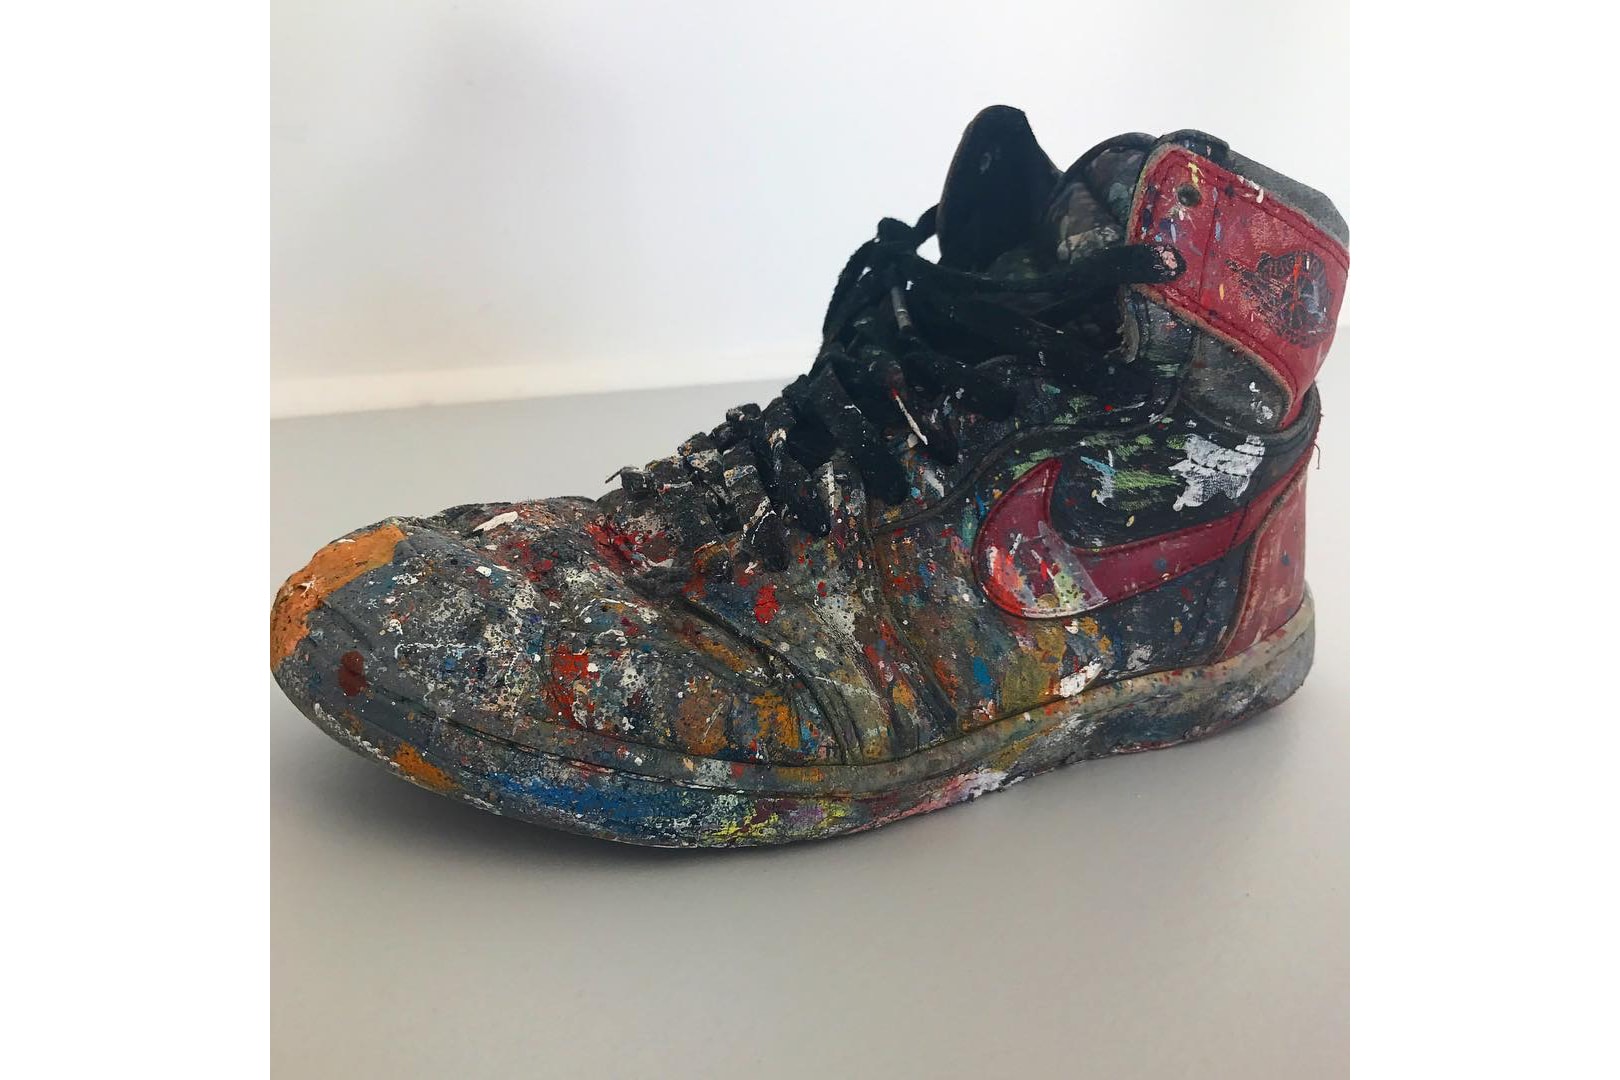 藝術家 Dave White 曬出 20 年前創作的 Air Jordan 1「Bred」塗鴉版本